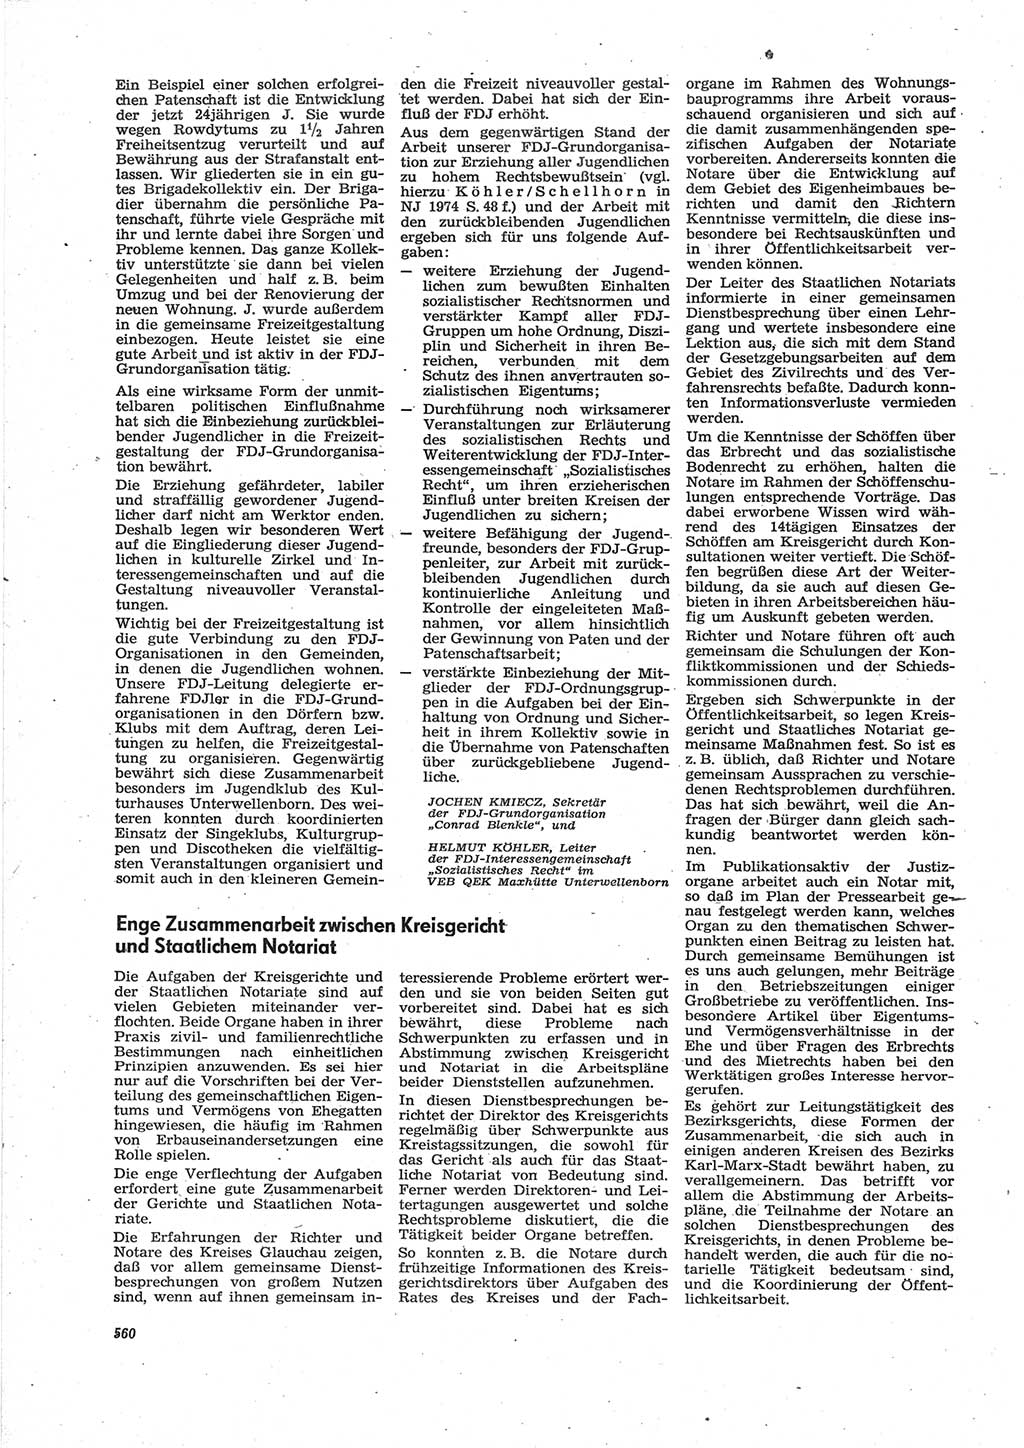 Neue Justiz (NJ), Zeitschrift für Recht und Rechtswissenschaft [Deutsche Demokratische Republik (DDR)], 28. Jahrgang 1974, Seite 560 (NJ DDR 1974, S. 560)